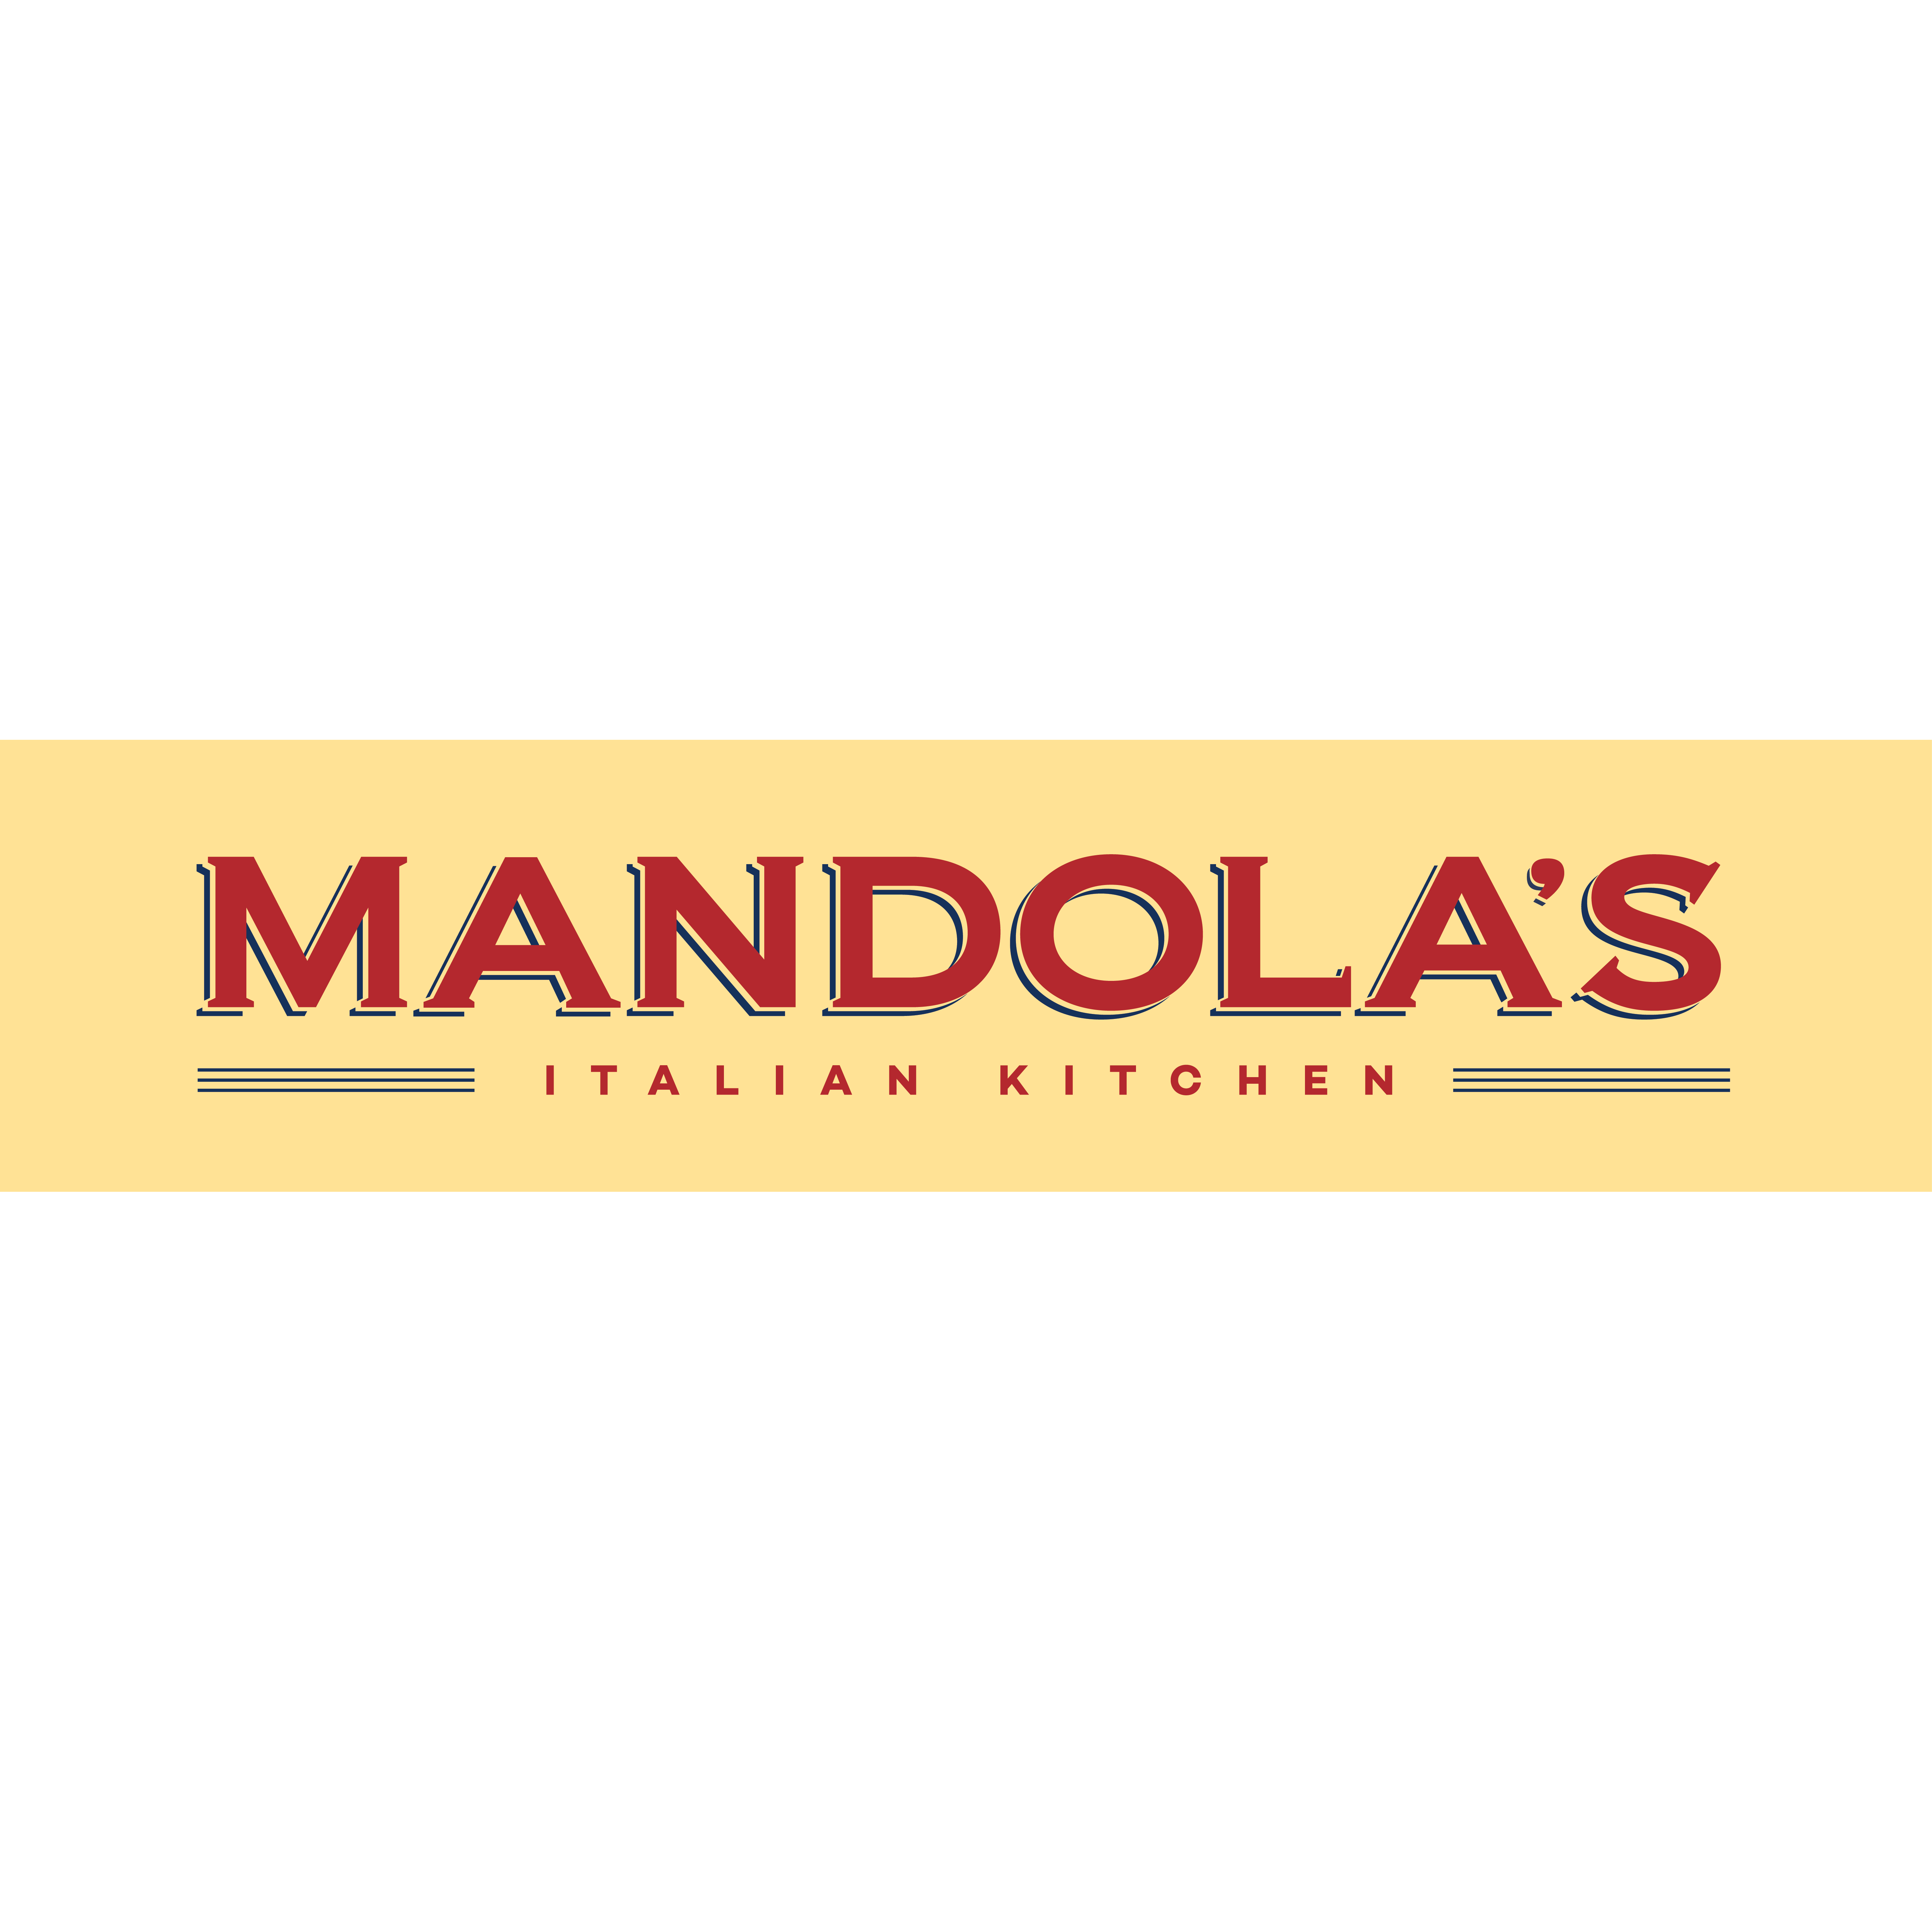 Mandola's Italian